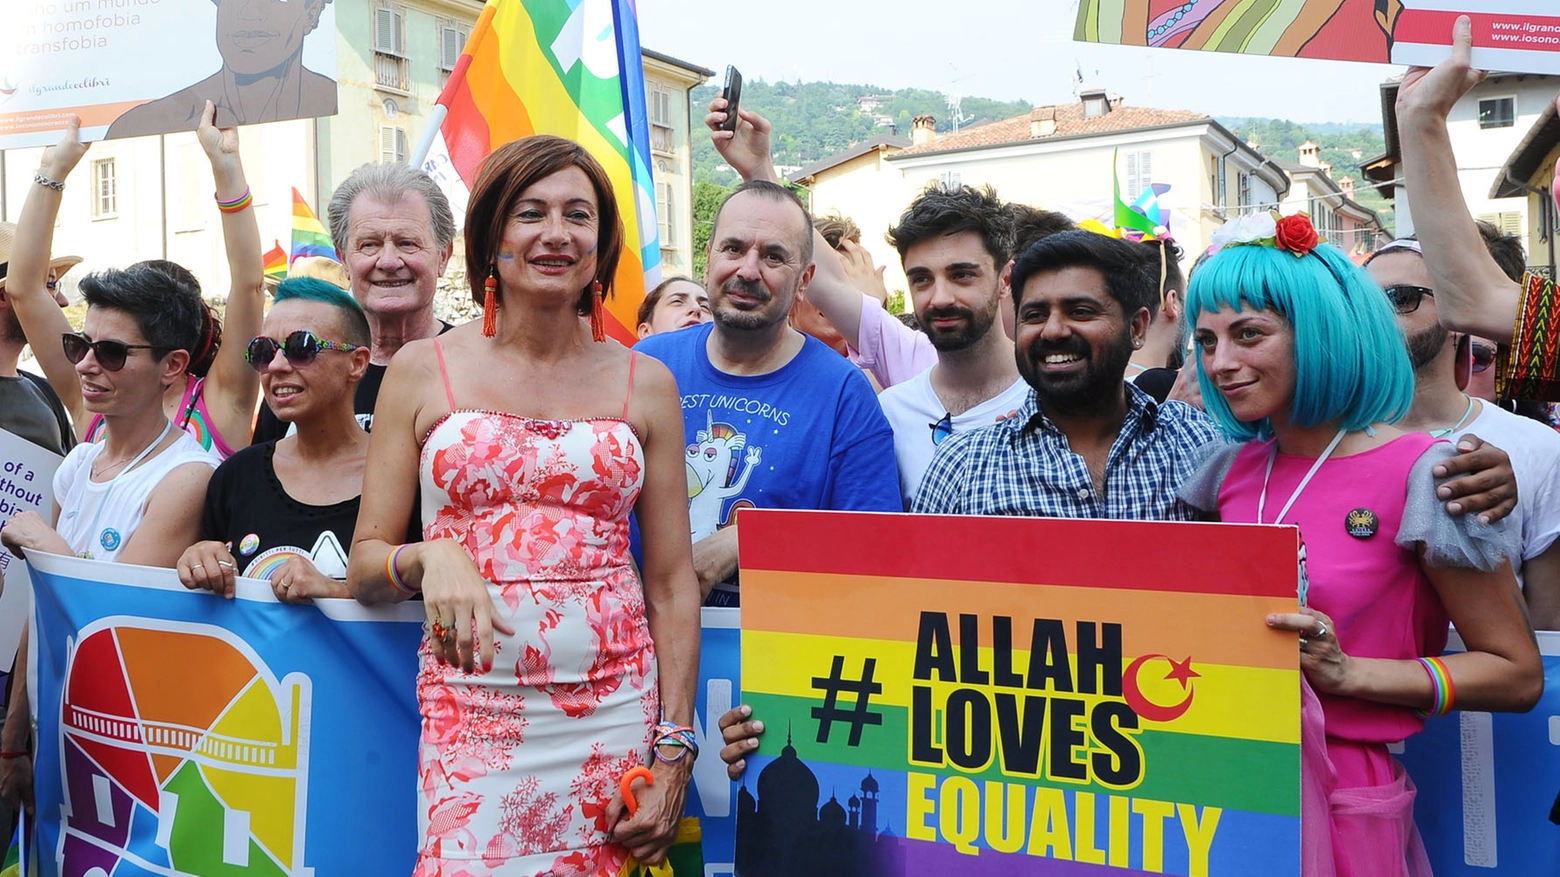 Brescia Pride, nella foto al centro Vladimir Luxuria (La Presse)